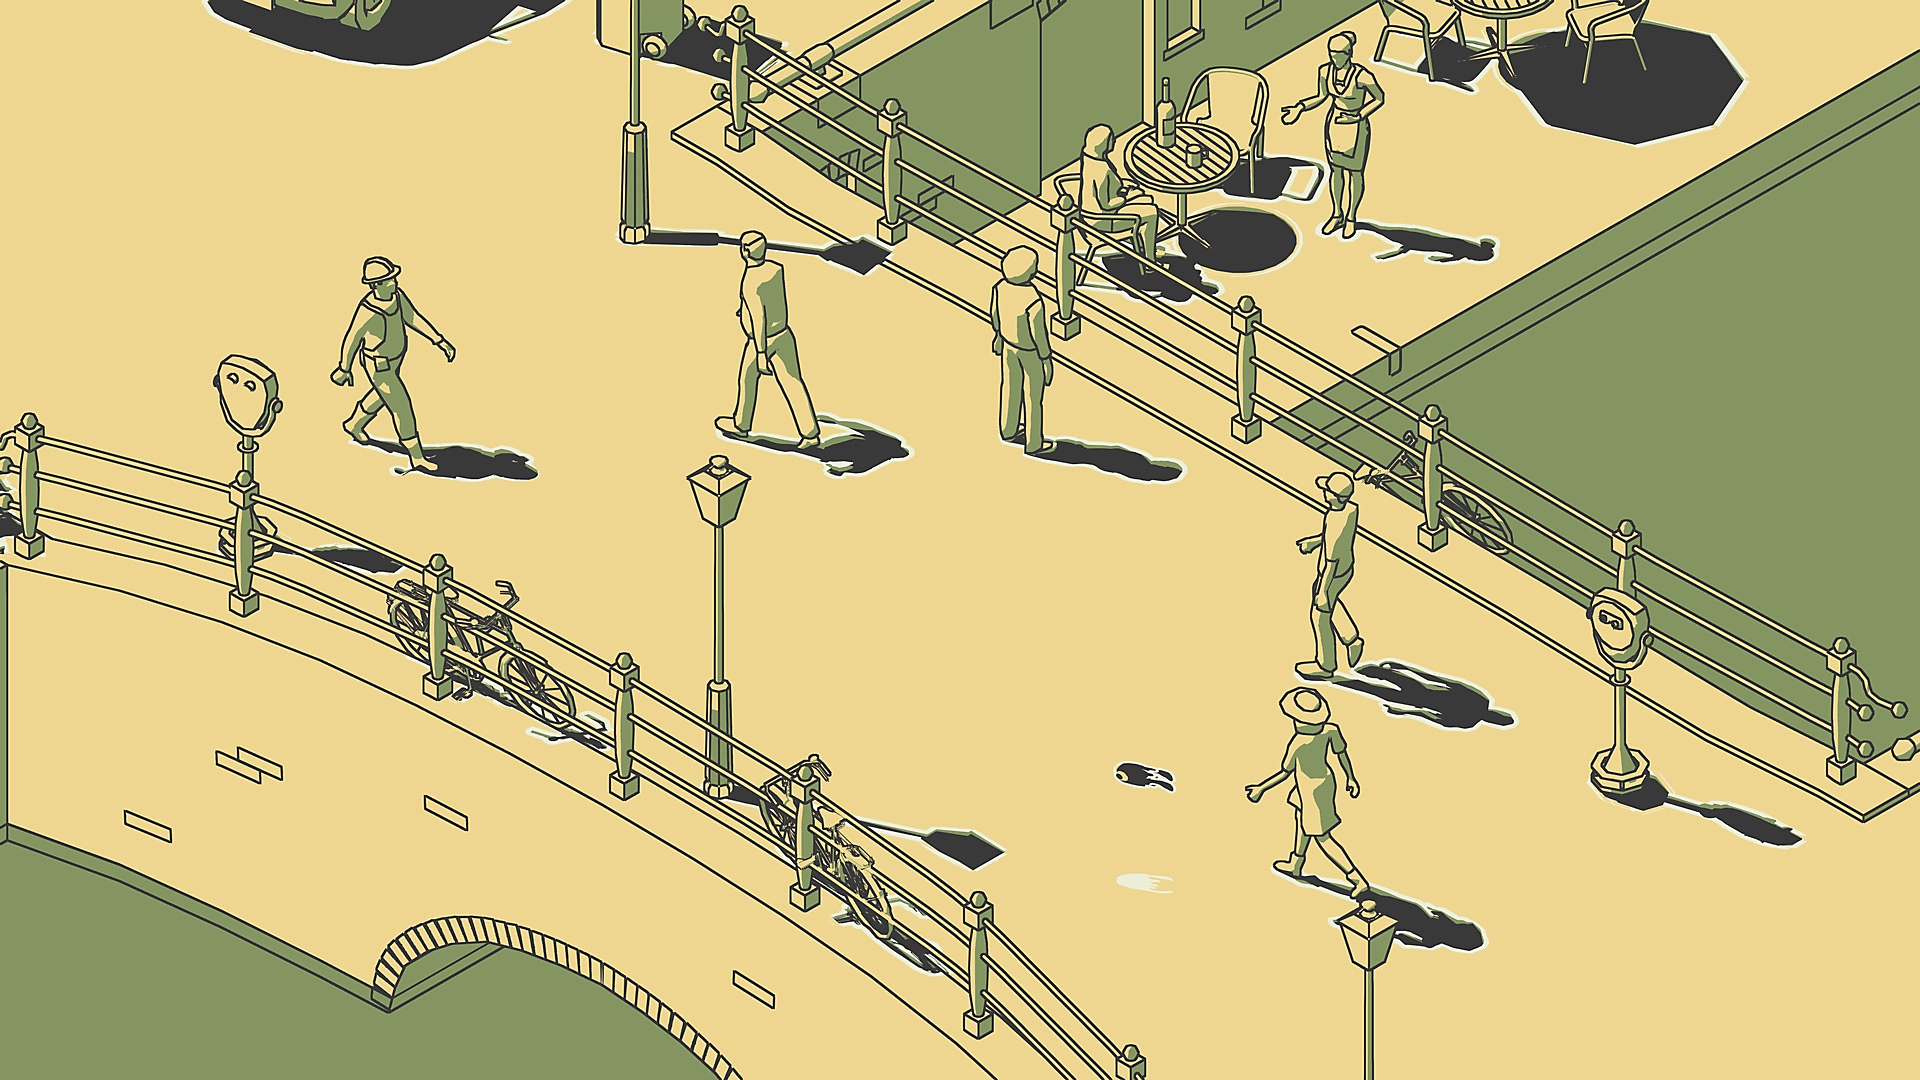 لقطة شاشة من لعبة SCHiM تعرض أشخاصًا يسيرون على جسر